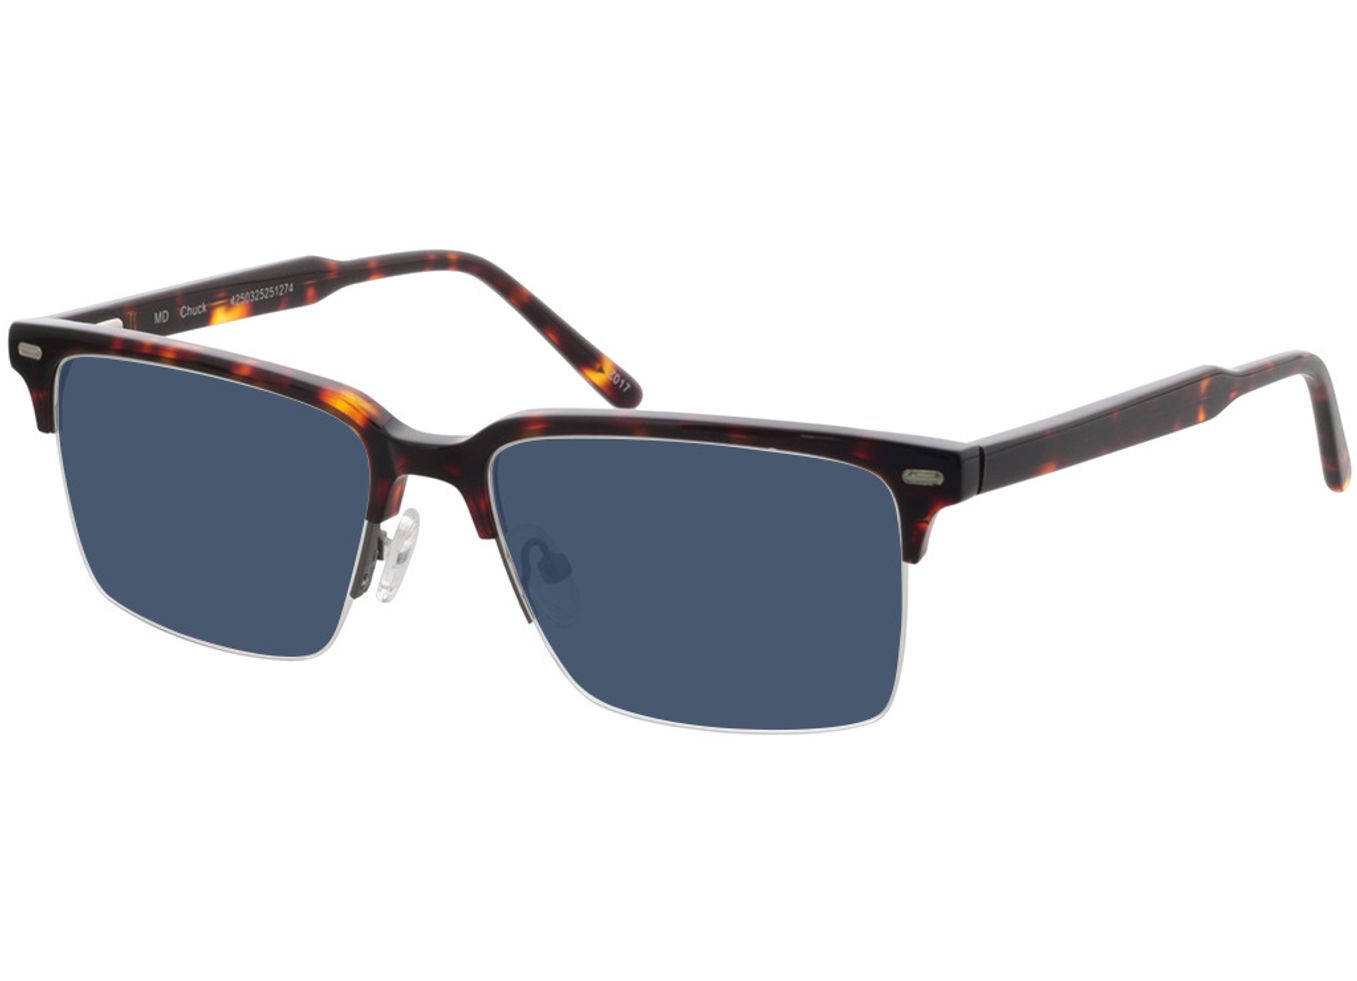 Chuck - havanna Sonnenbrille ohne Sehstärke, Halbrand, browline von Brille24 Collection